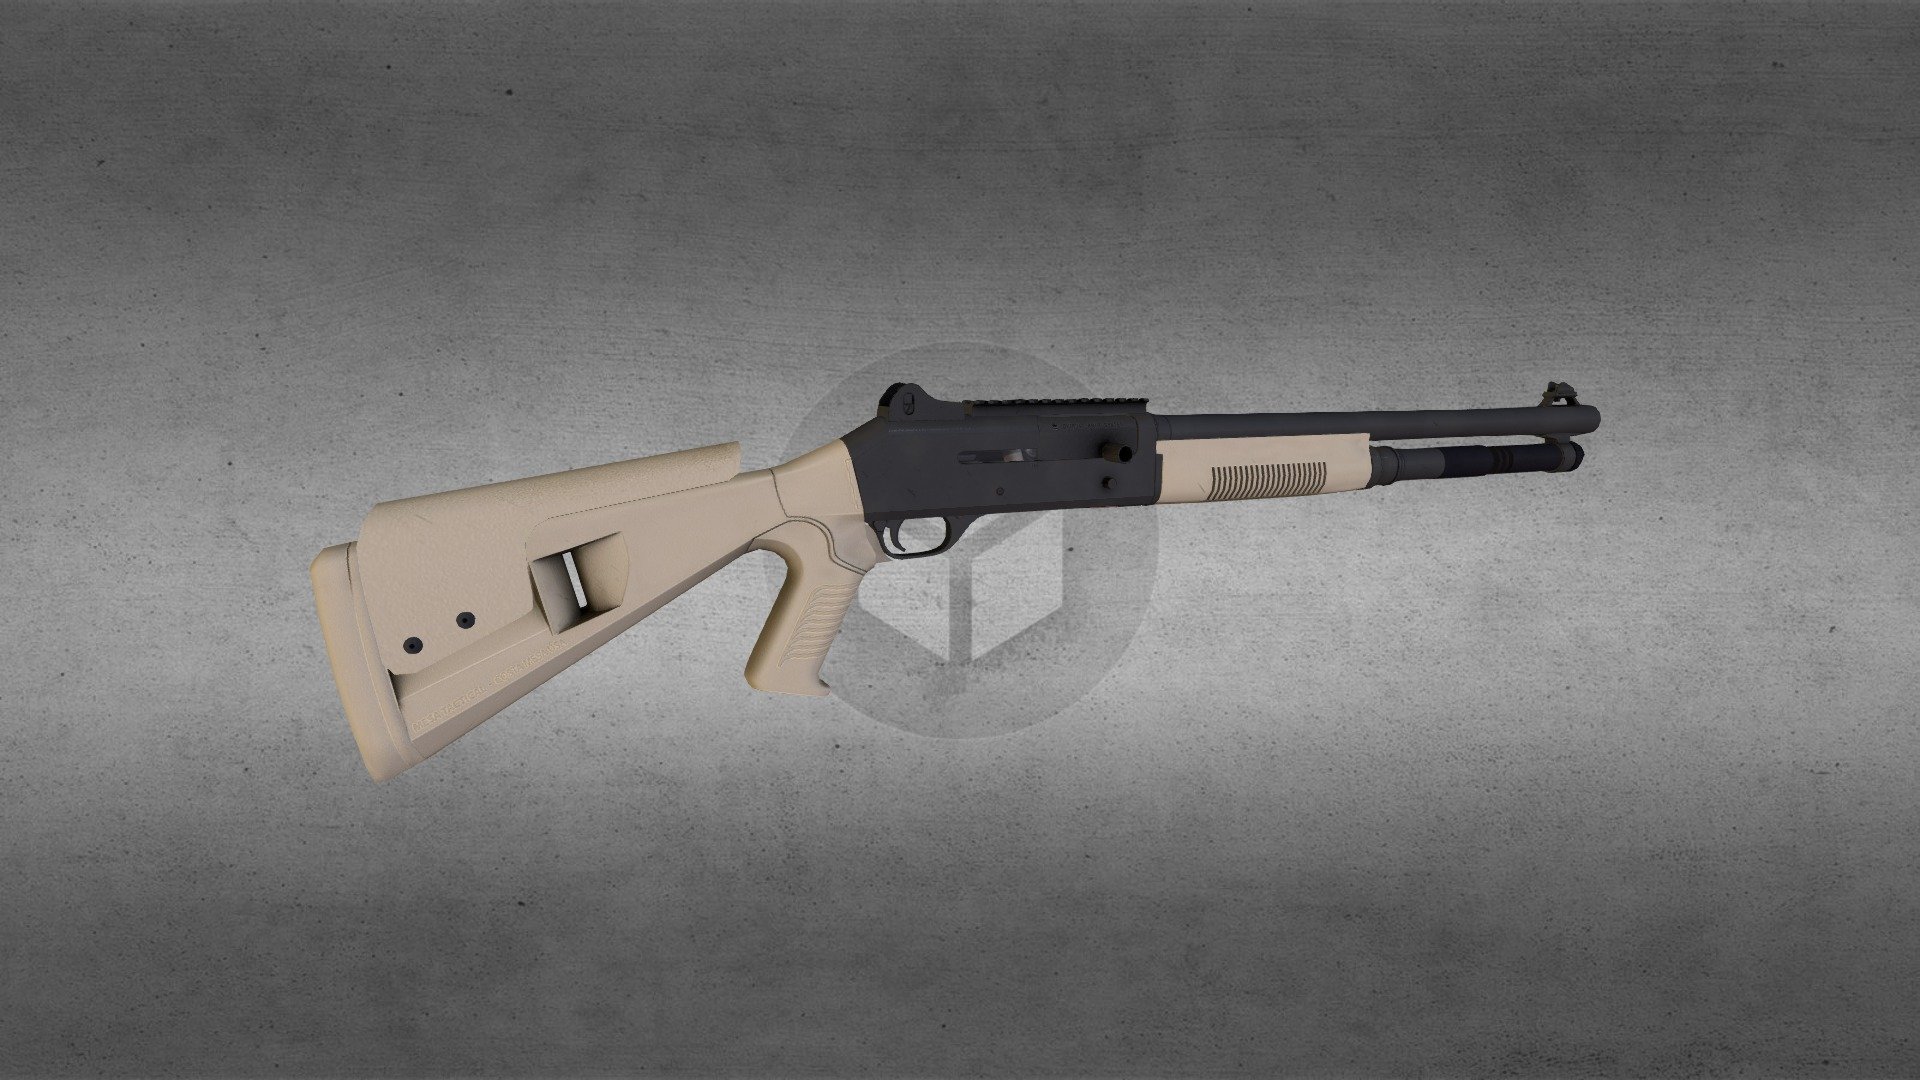 Benelli Armi SpA of Urbino, Italy designed and built the Benelli M4 Super 90 Combat Shotgun 3d model